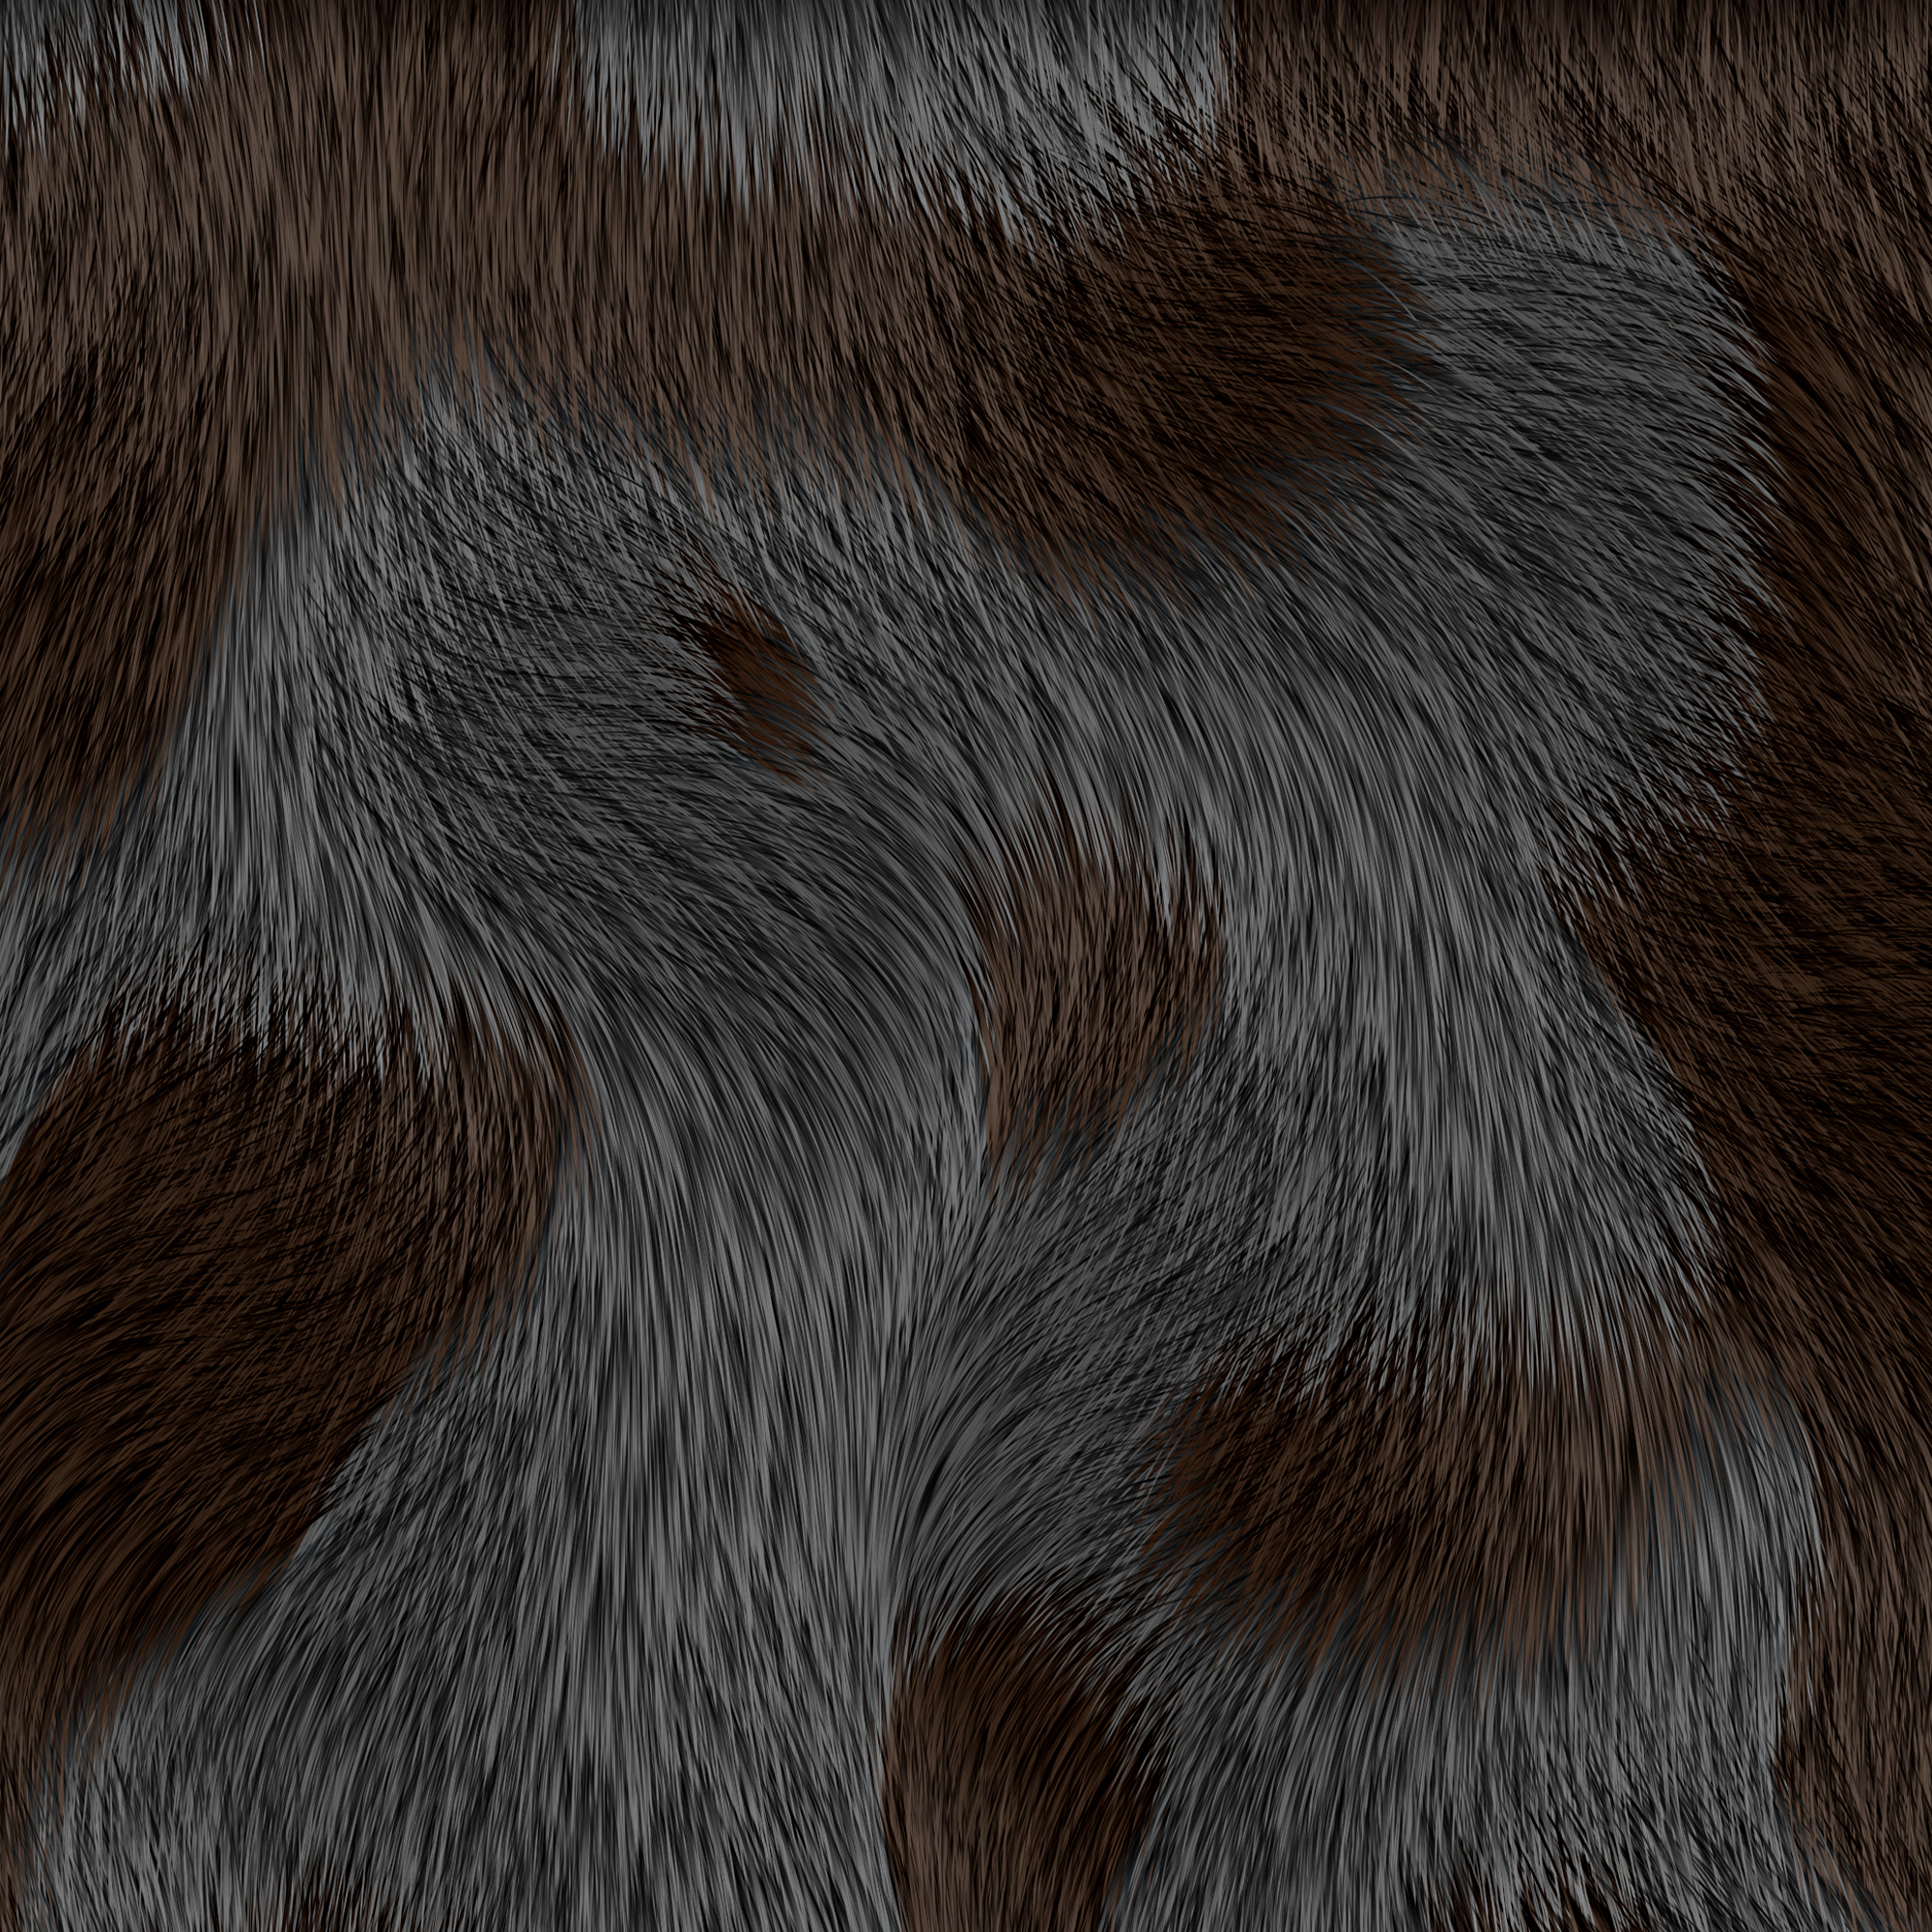 animal texture, background, шкура животного текстура, фон